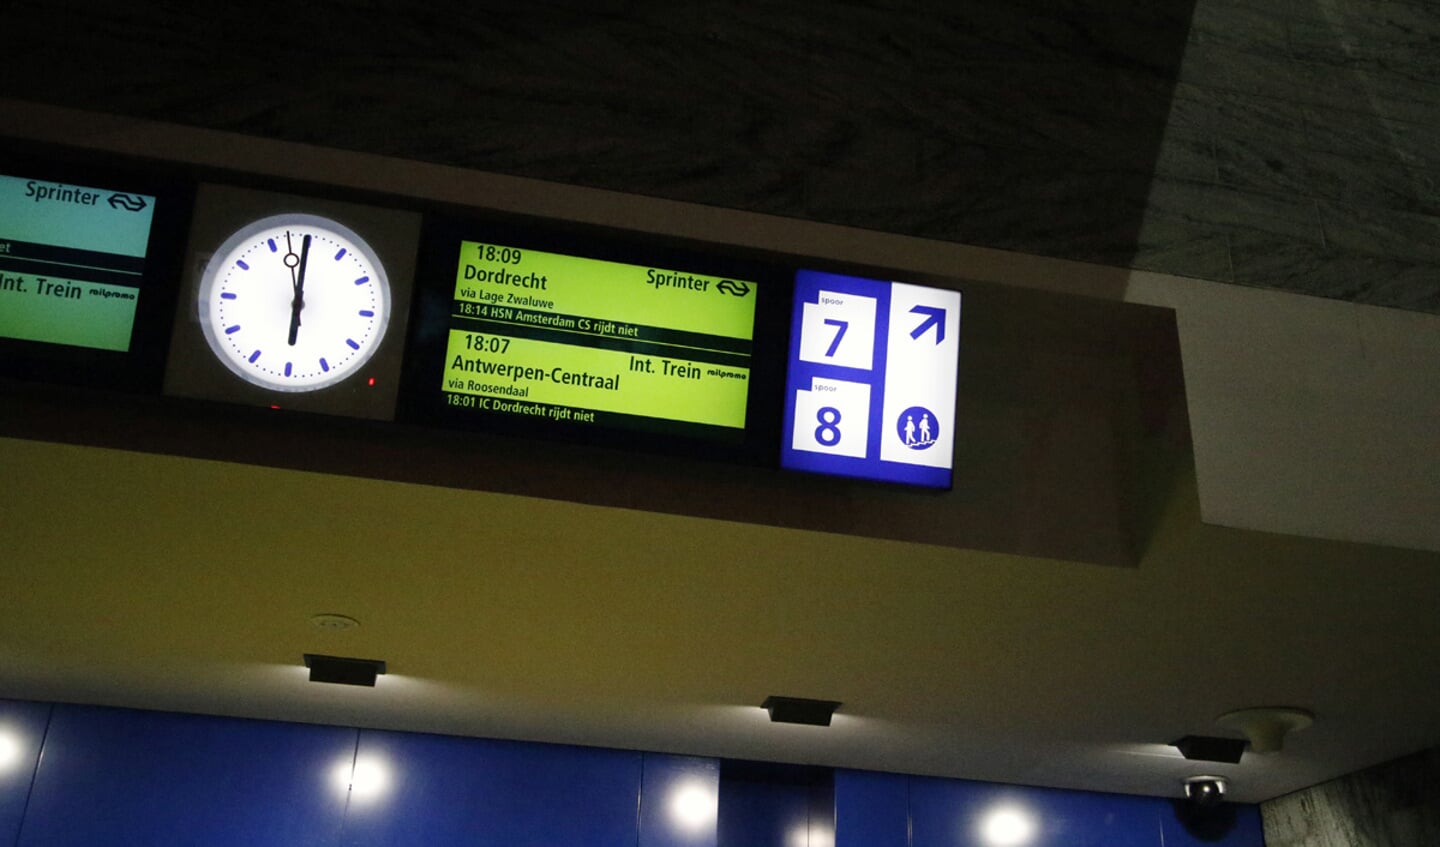 De BZW regelde voor dinsdag 10 januari 2017 een trein tussen Breda en Antwerpen. Daarmee wilde de werkgeversorganisatie een signaal afgeven naar Den Haag over het uitblijven van een trein over het HSL-spoor.